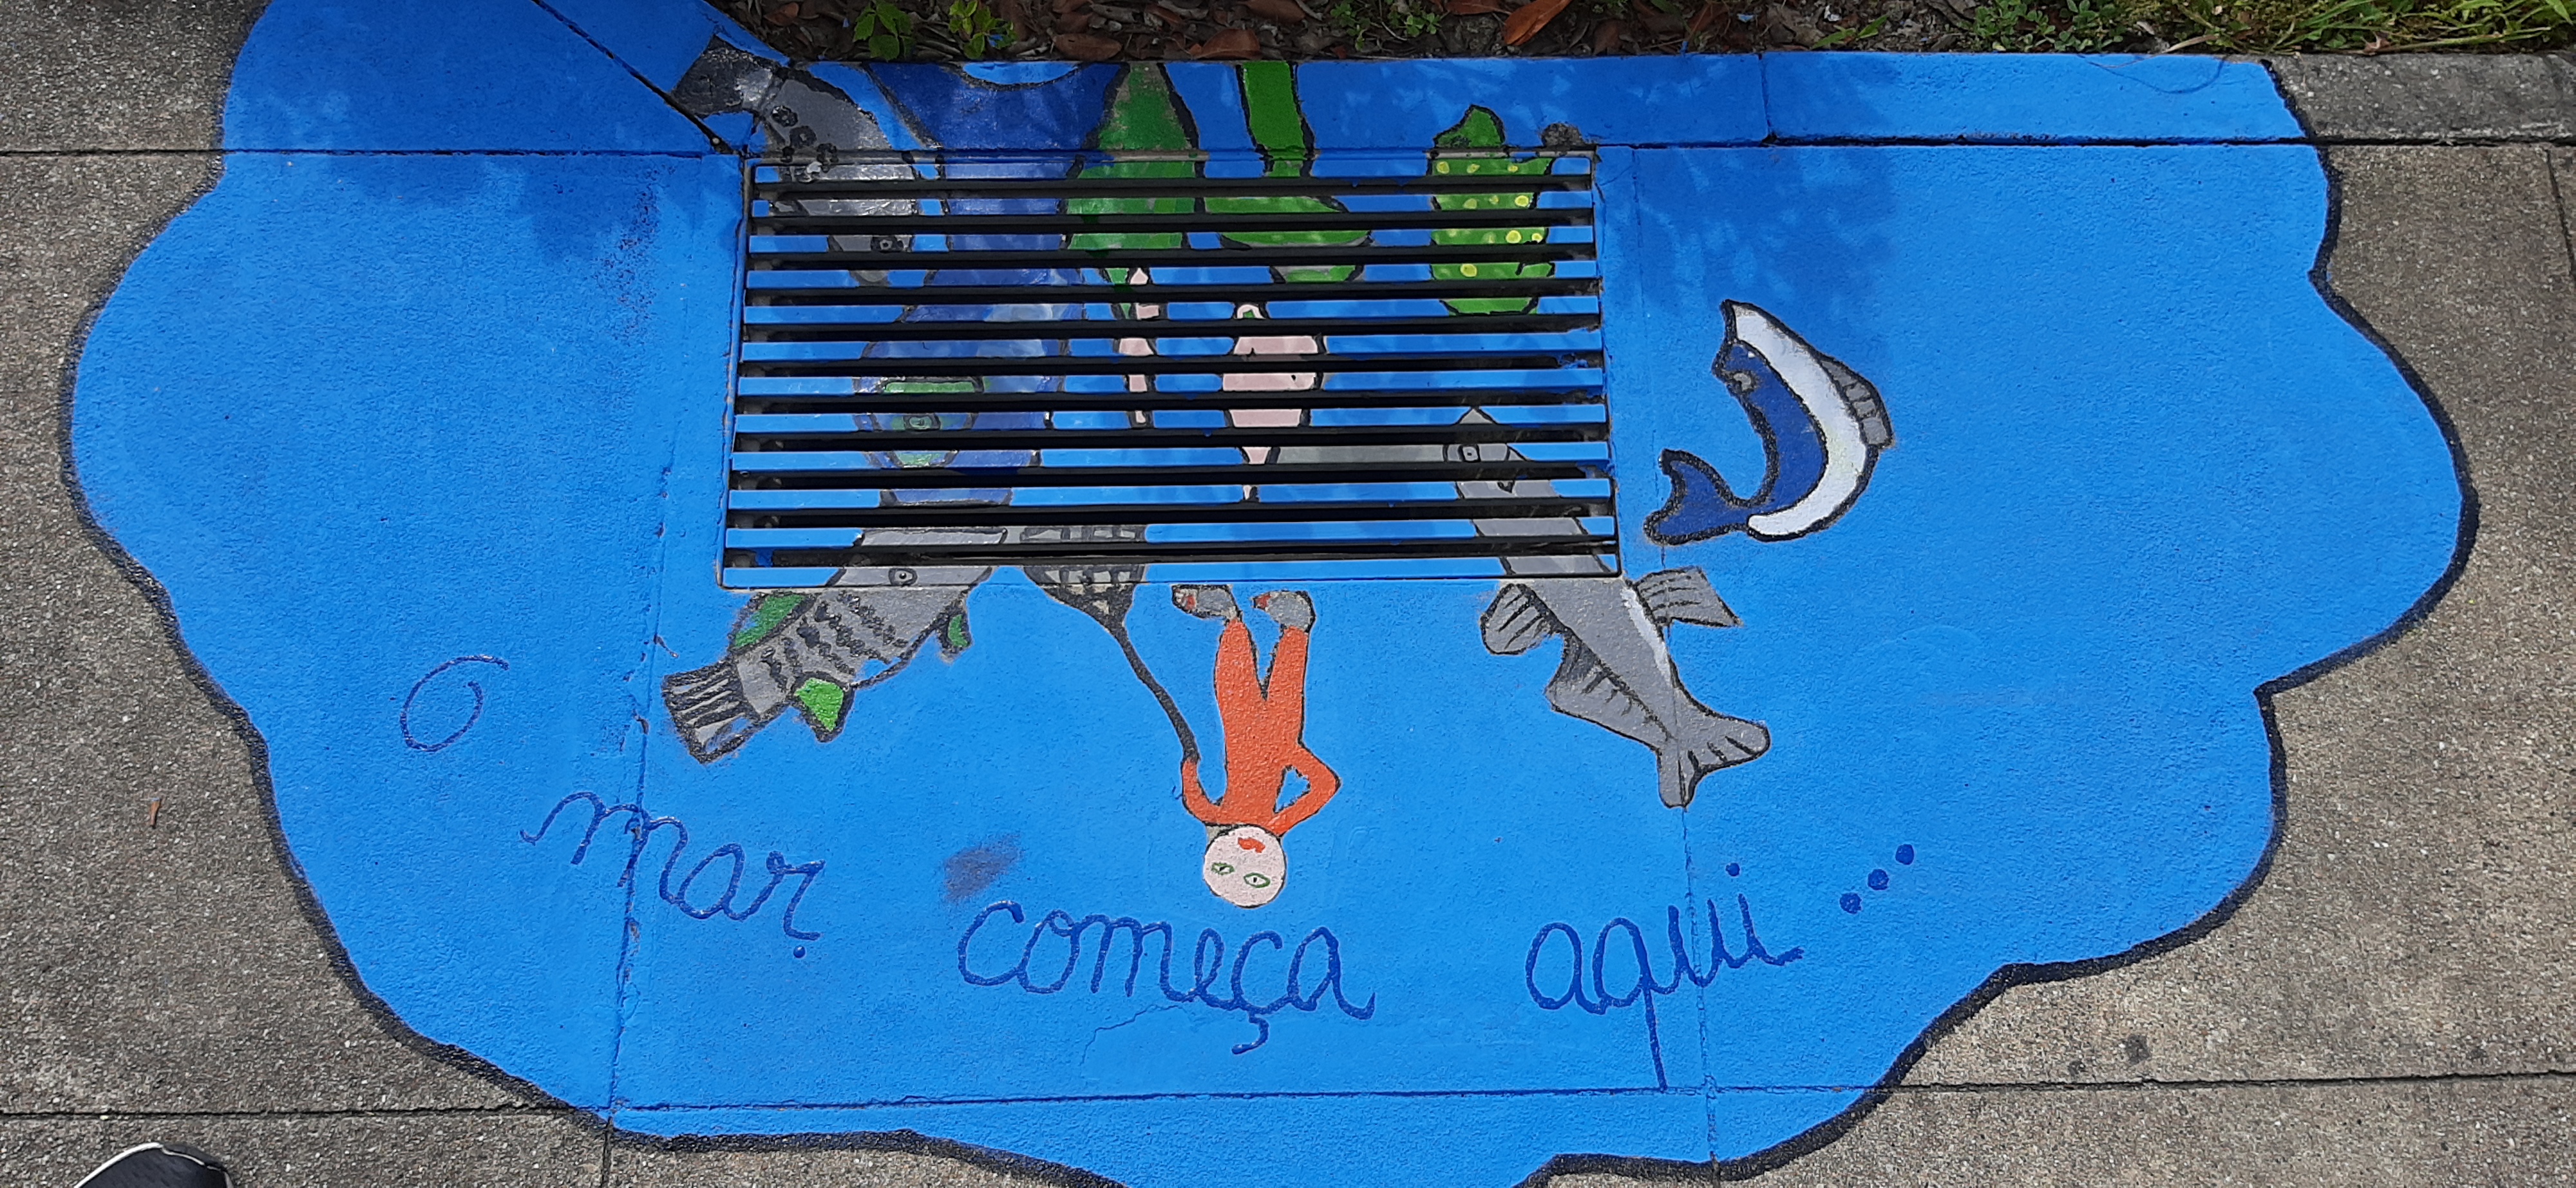 Escola EB S. Faustino<br />
Representação do rio e seus peixes com um pescador